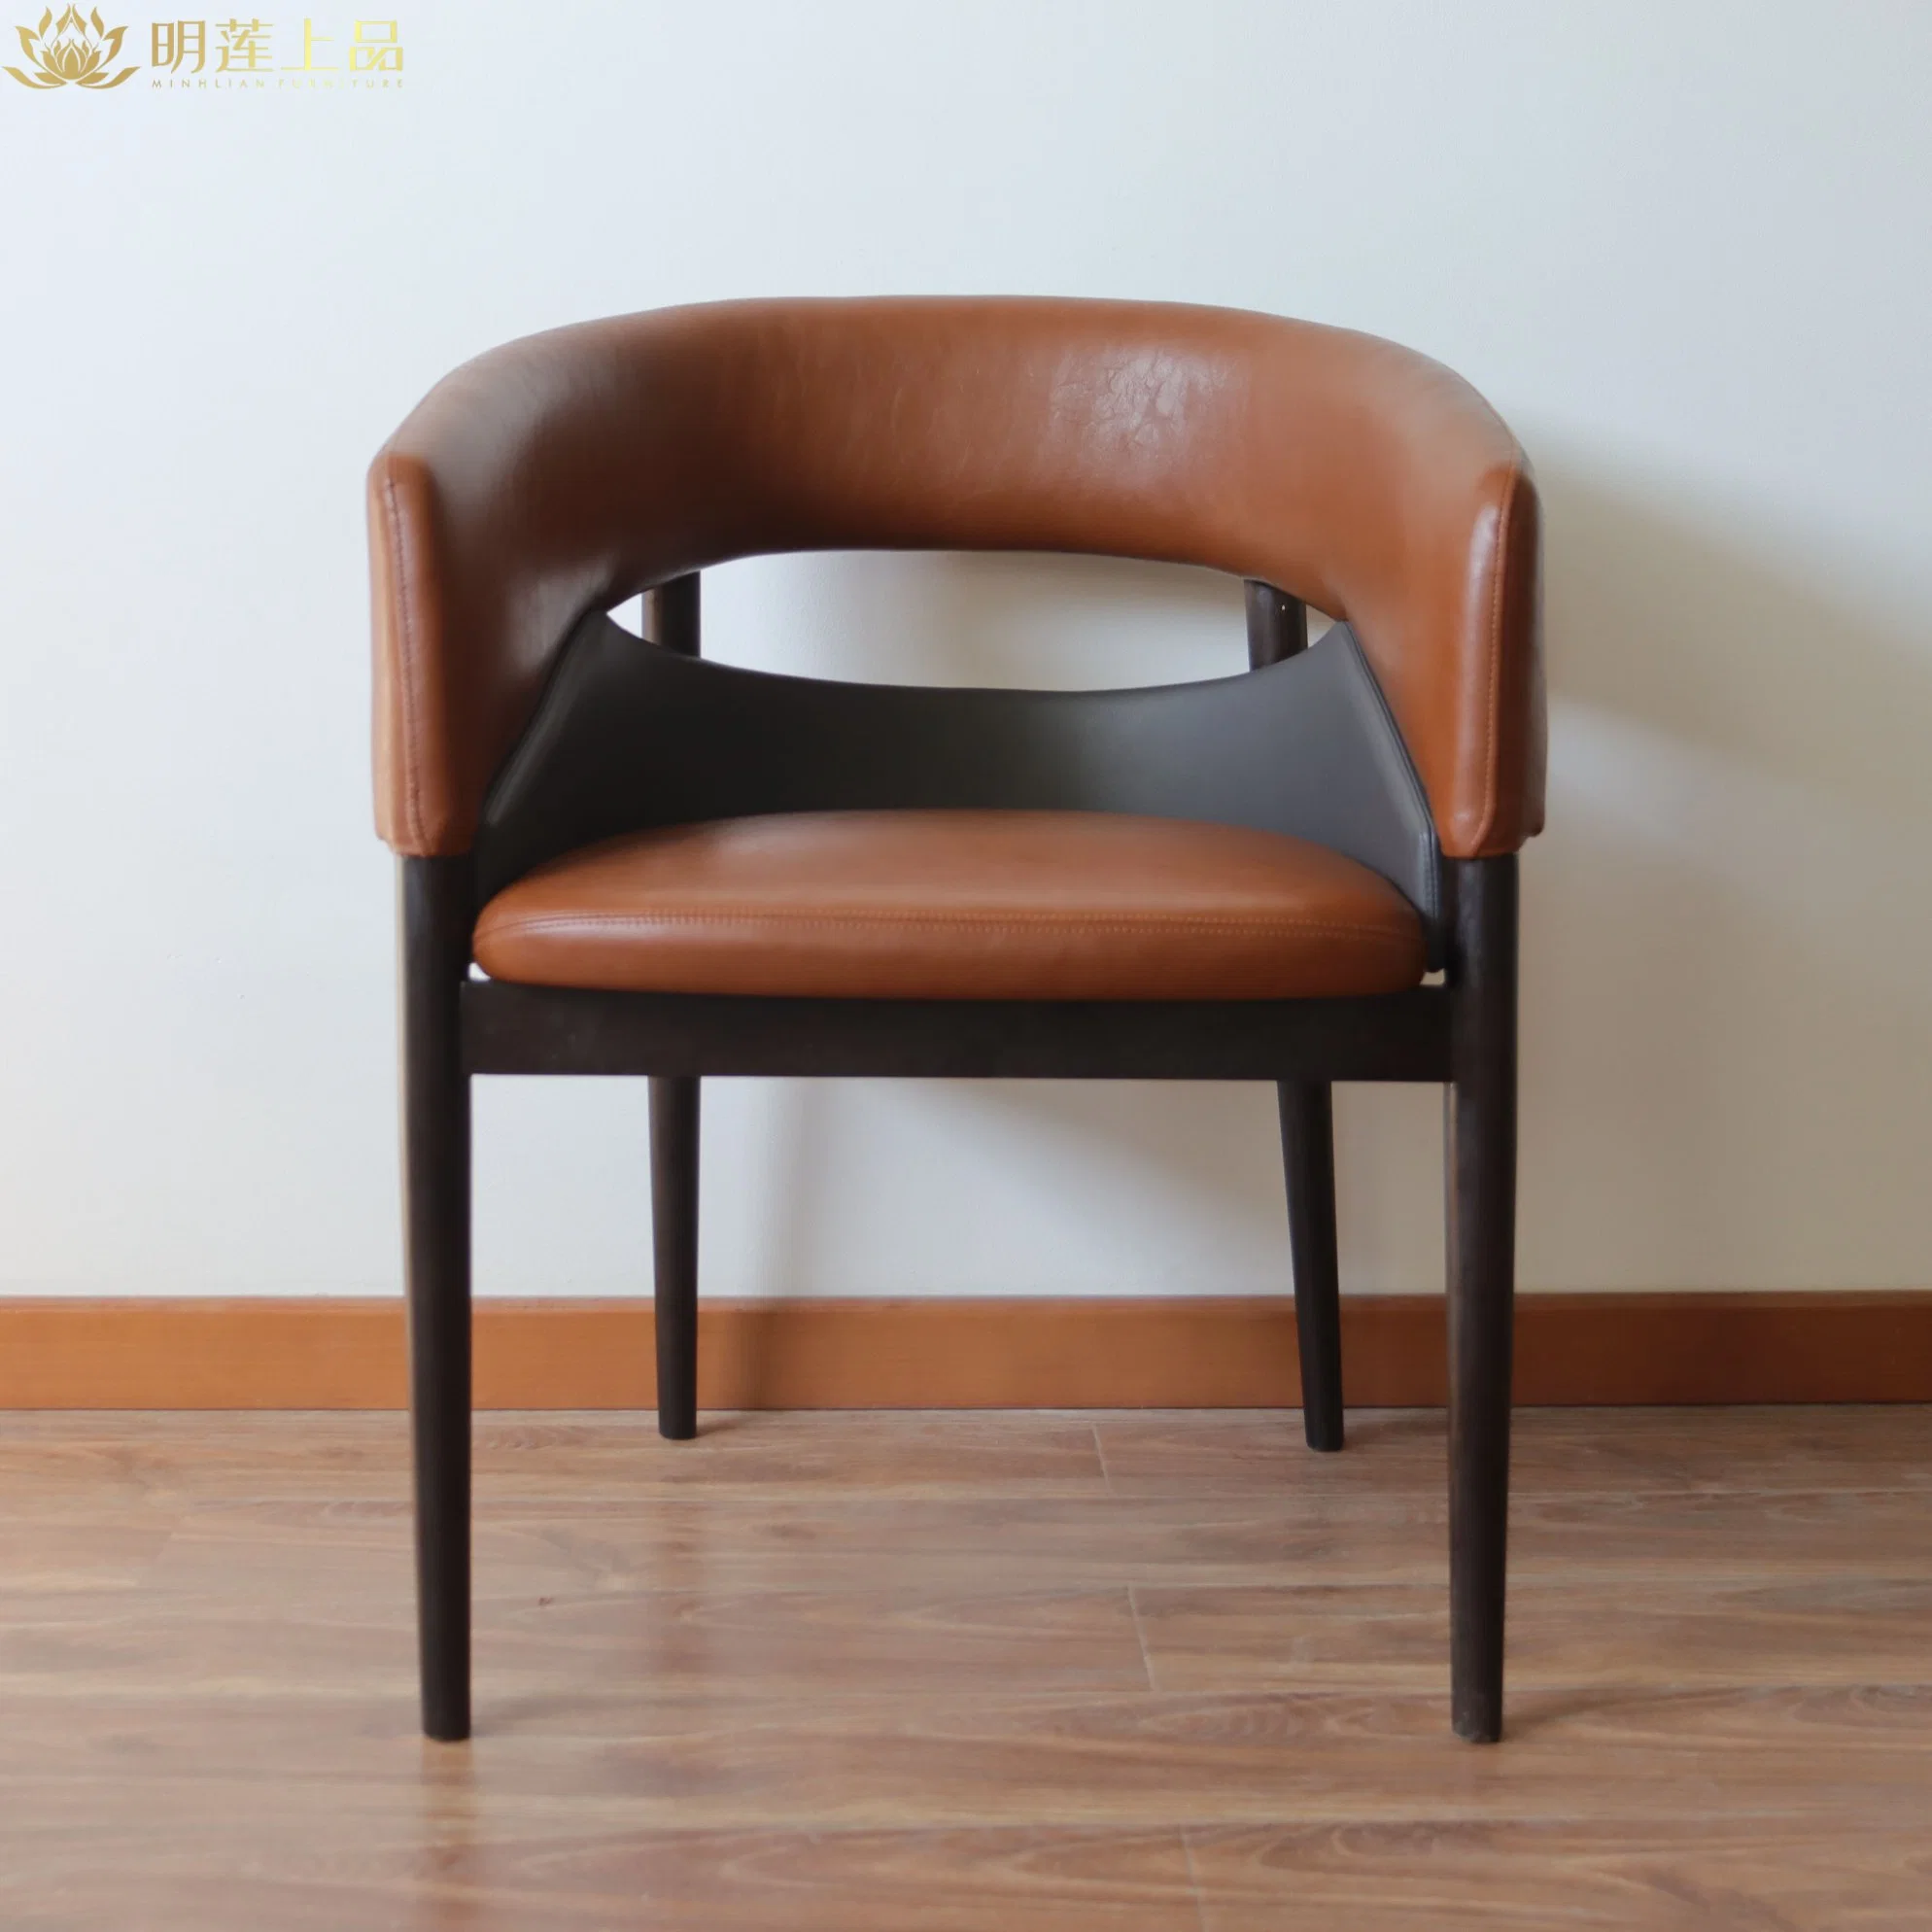 مطعم منجد من الجلد المصنوع من الألياف الدقيقة، يتميز بتصميم عصري، ويضم كرسي خشبي ثابت كرسي خشبي مريح